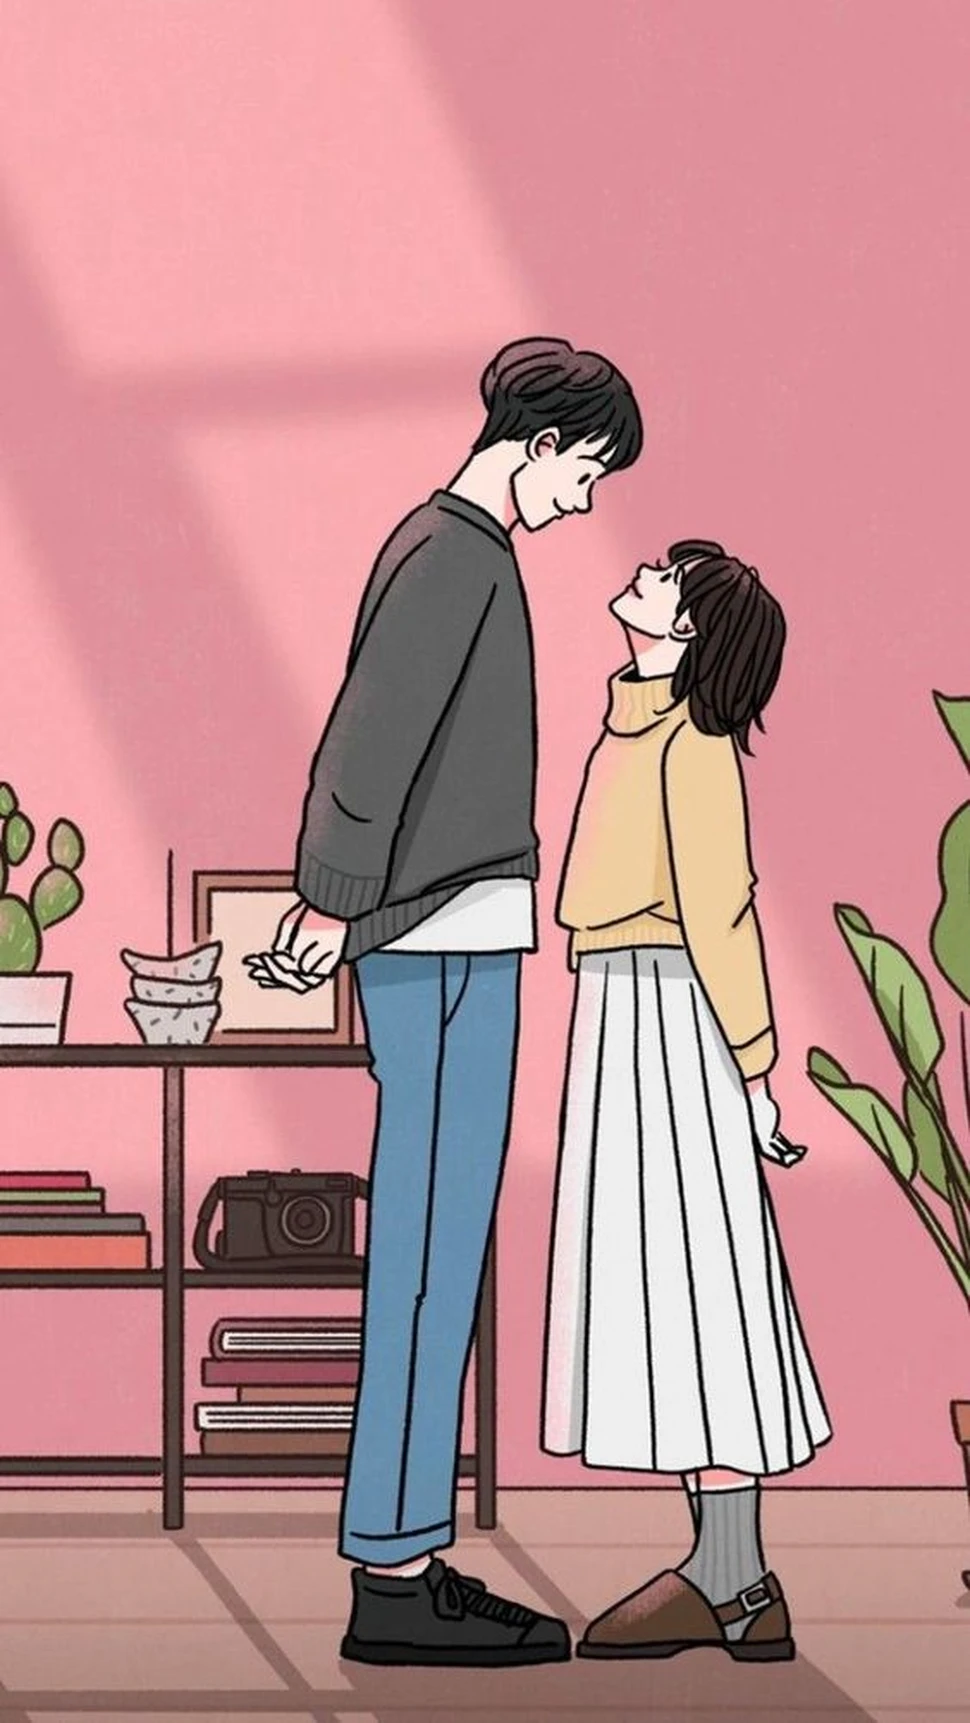 Tải ảnh cặp đôi yêu nhau anime đẹp nhất - THCS Giảng Võ